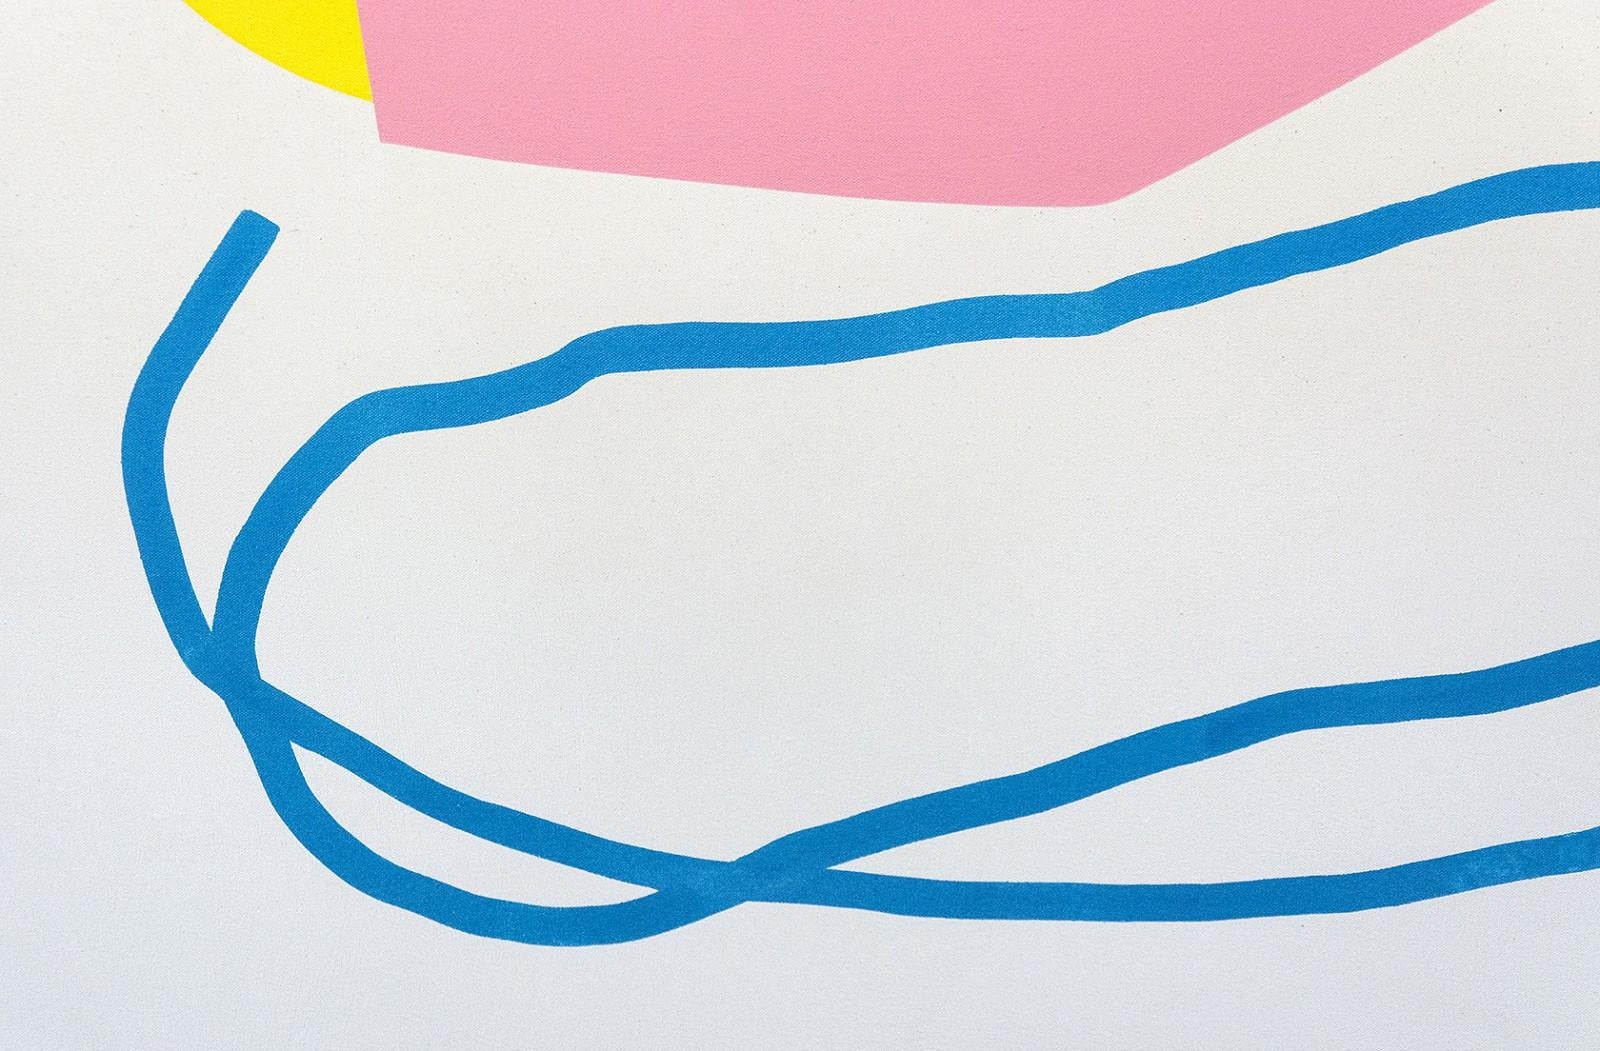 Rose contre-jaune et ligne bleue - formes abstraites colorées, acrylique sur toile - Beige Abstract Painting par Aron Hill